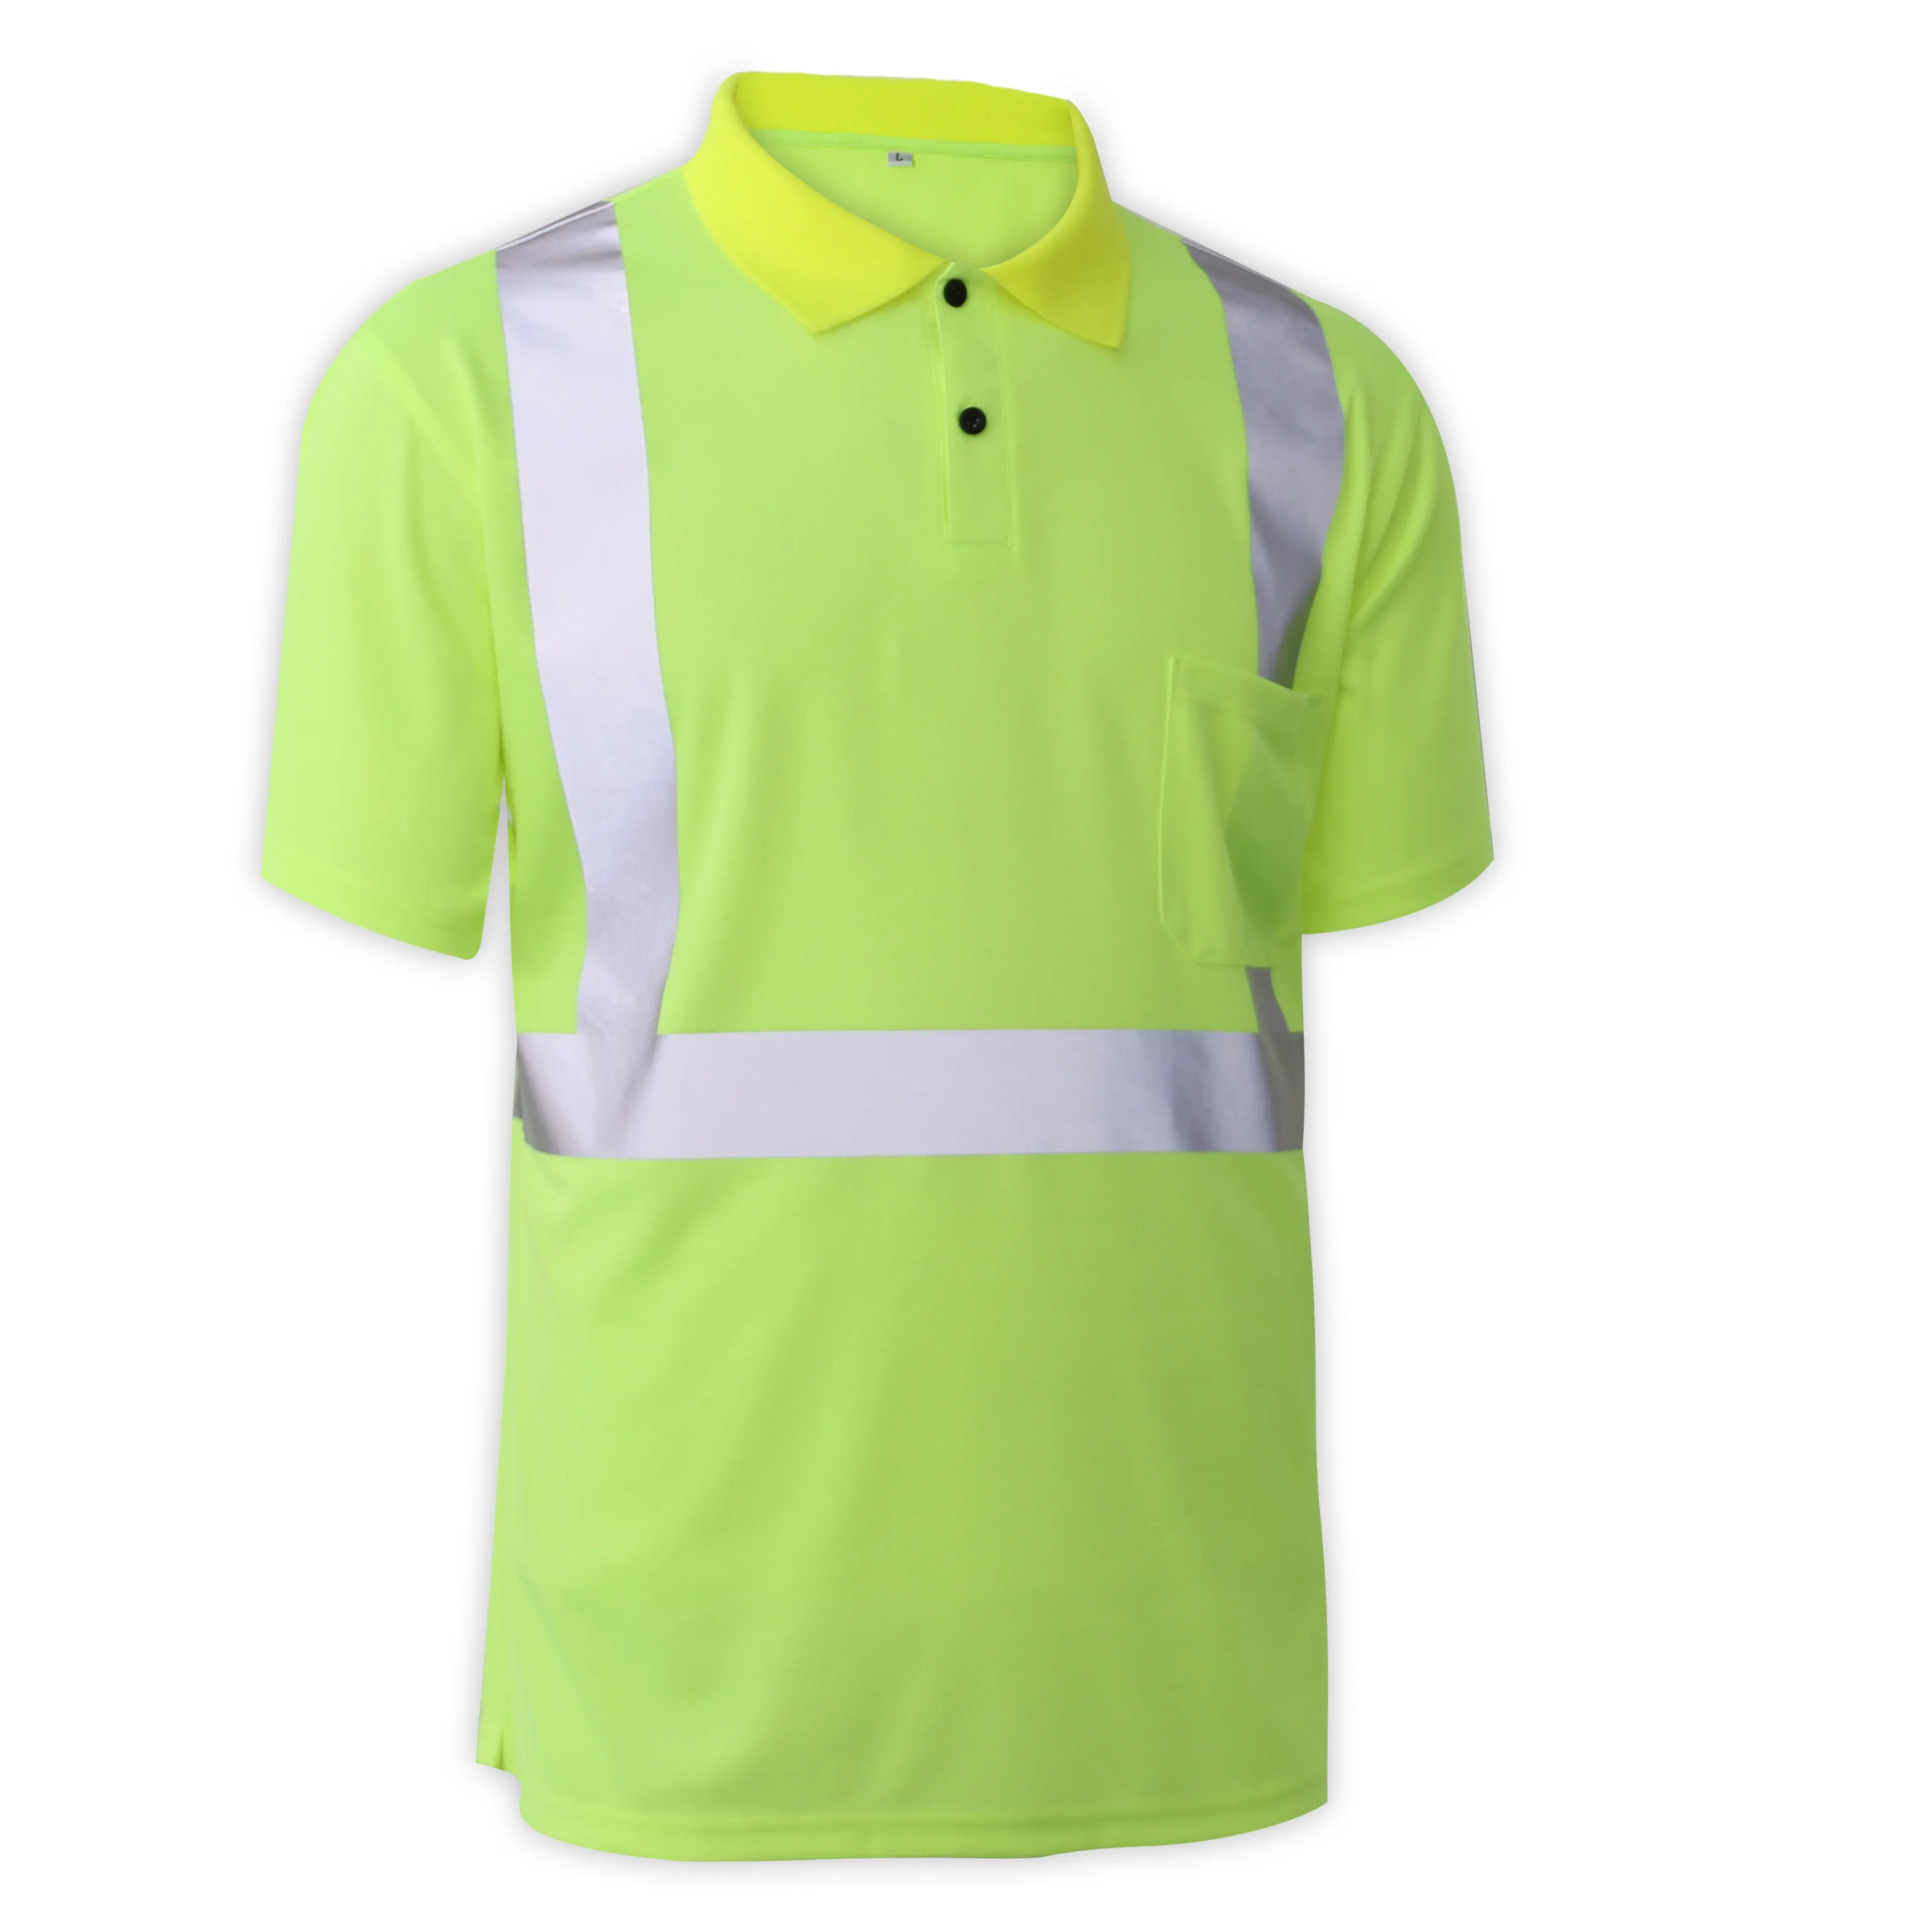 ハイビスポリエステルバードアイファブリック通気性蛍光グリーン安全反射建設ワークシャツメンズTシャツワークウェア